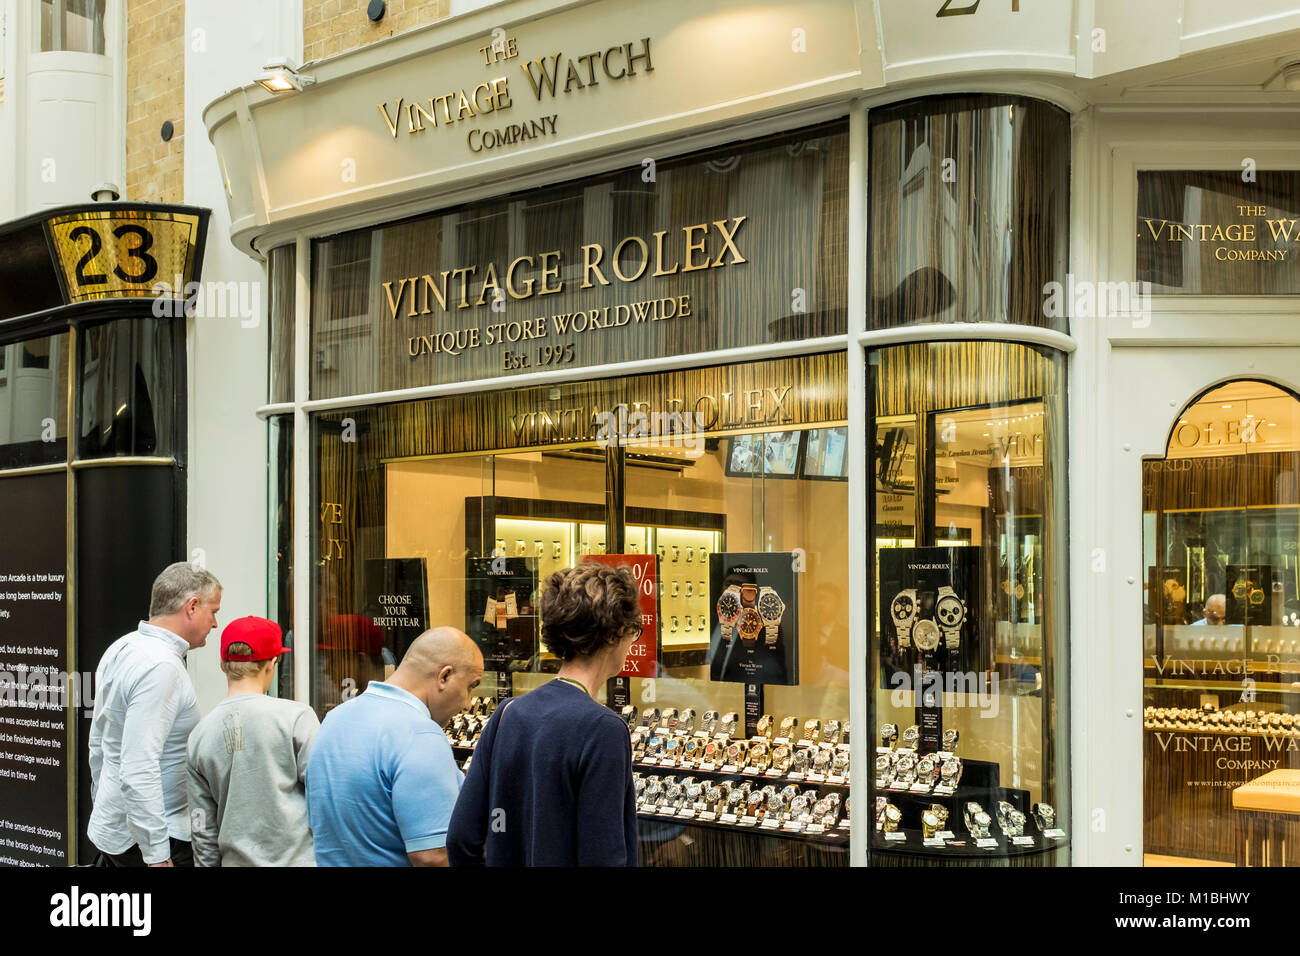 Persona guardando orologi vintage attraverso la finestra del negozio di Vintage Watch Company, Burlington Arcade, London, Regno Unito Foto Stock